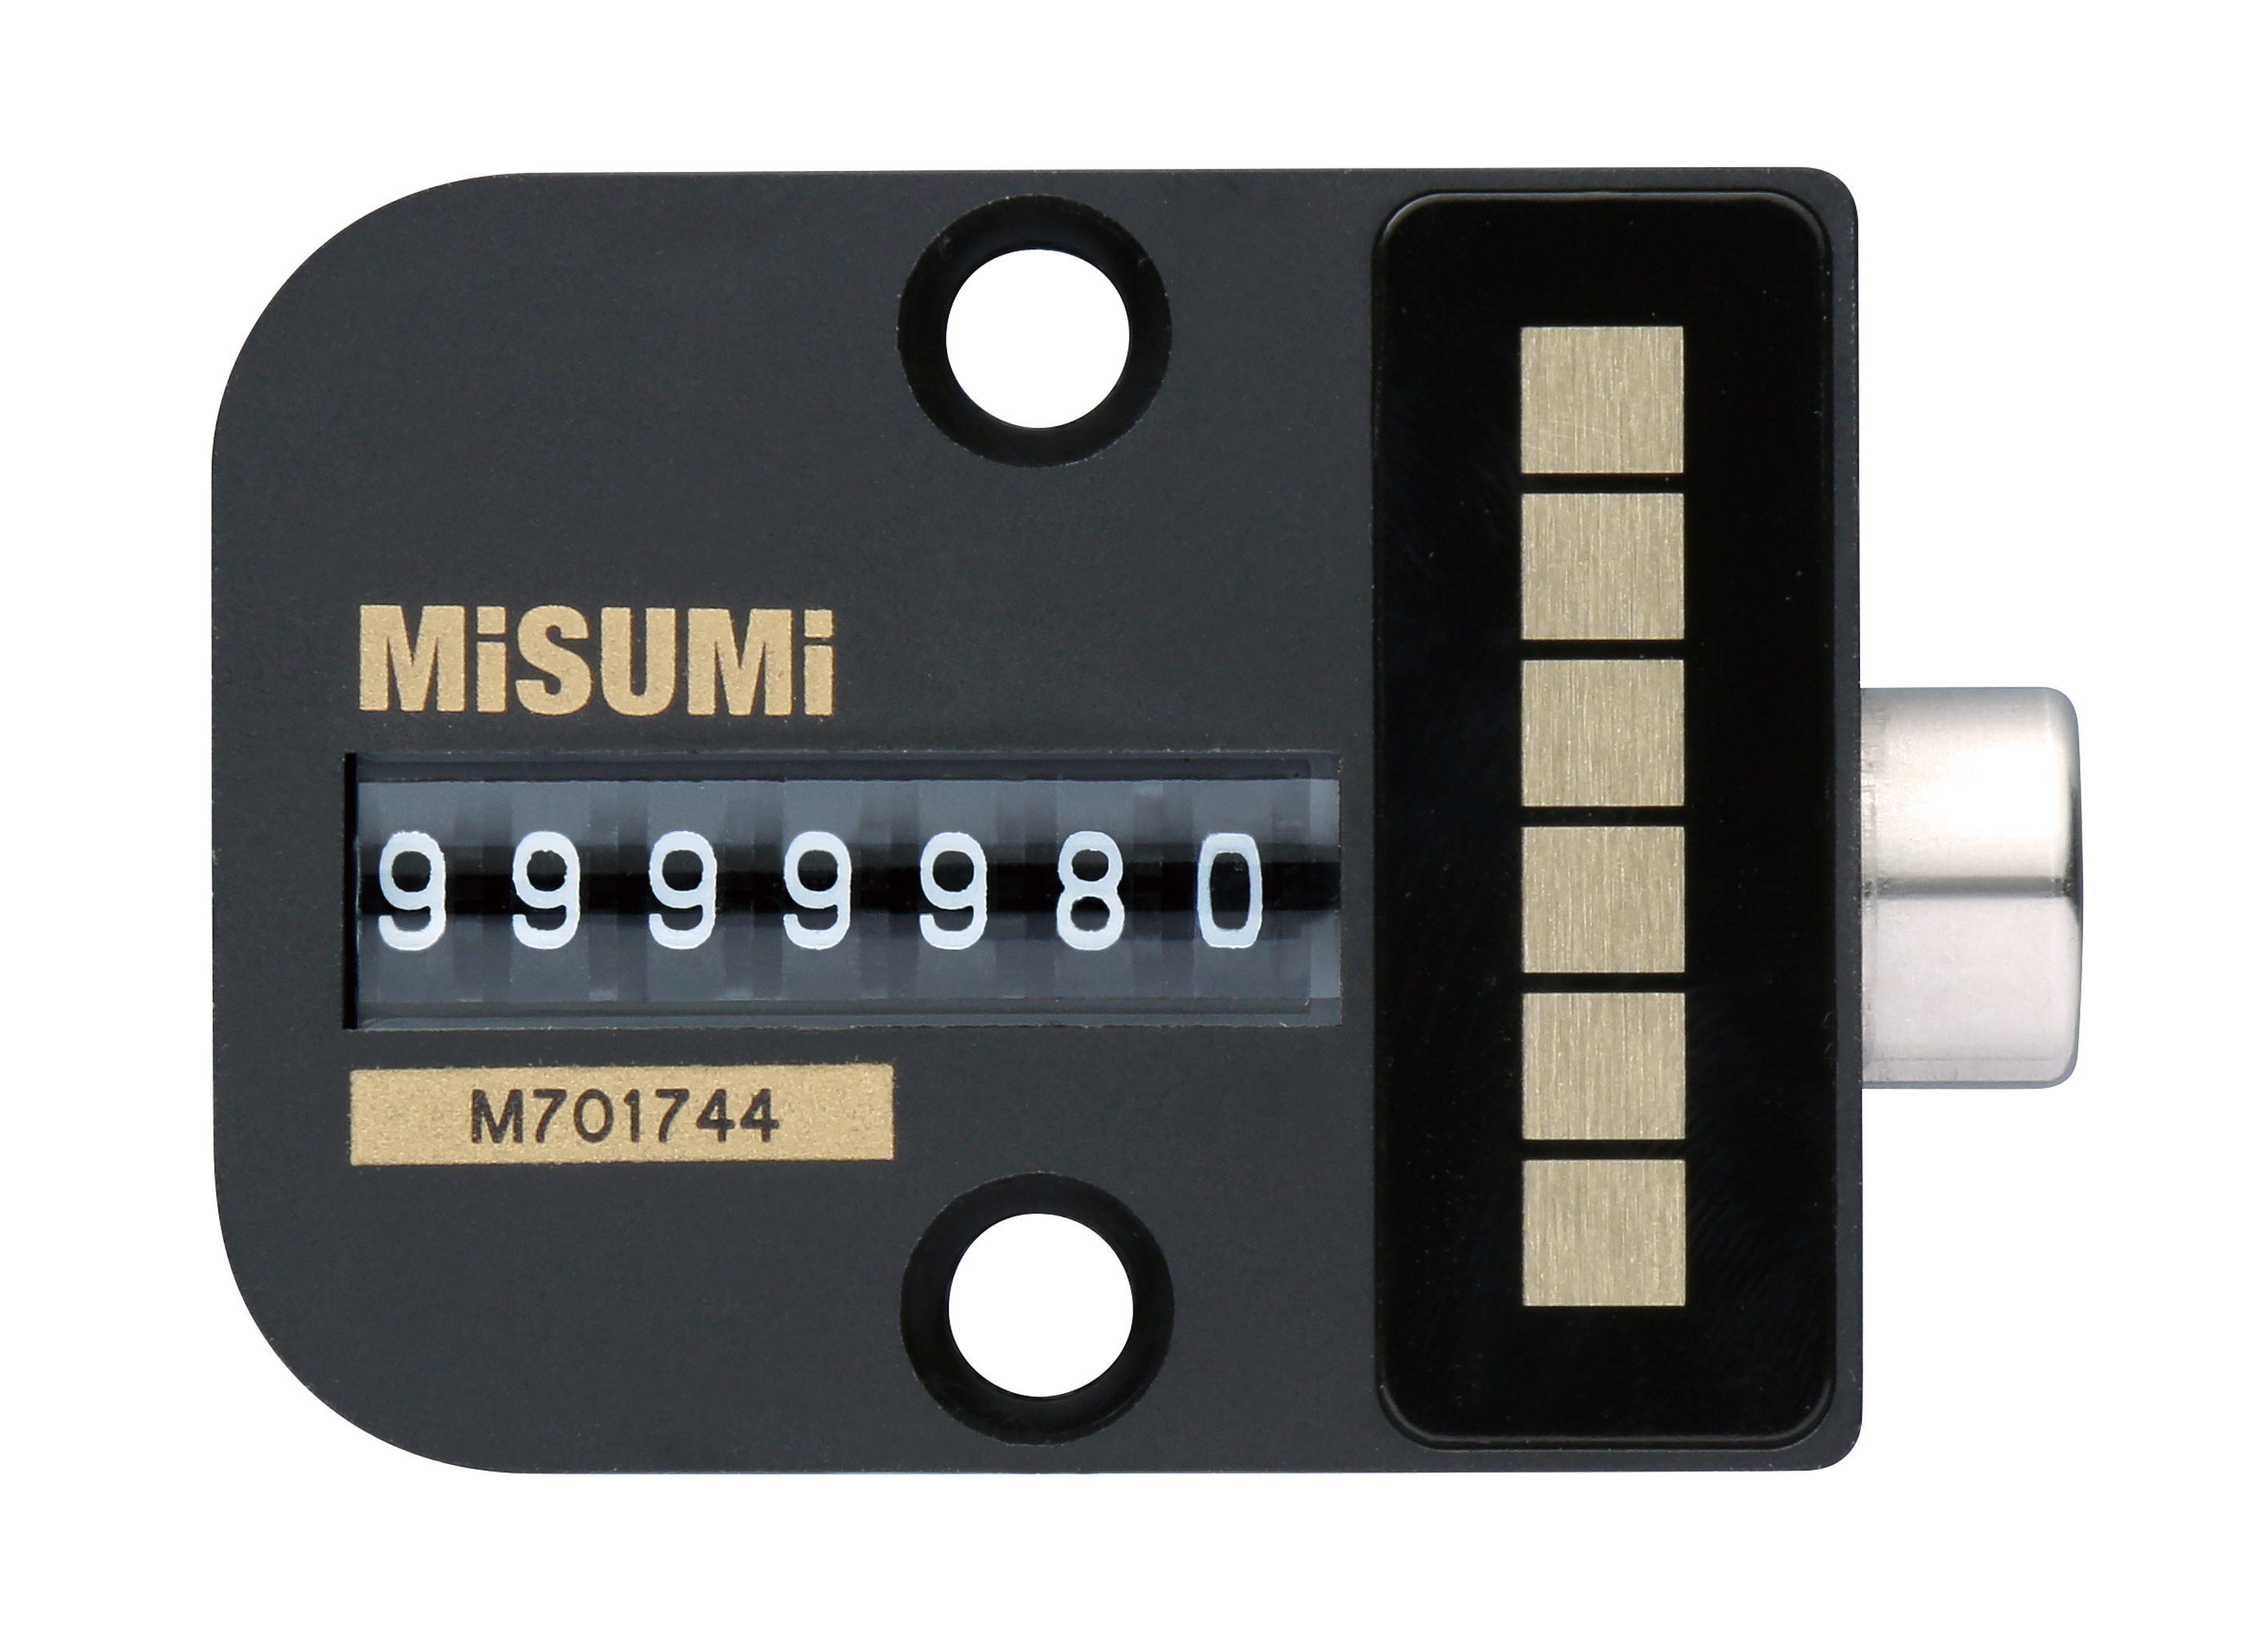 周期計數器(MISUMI)